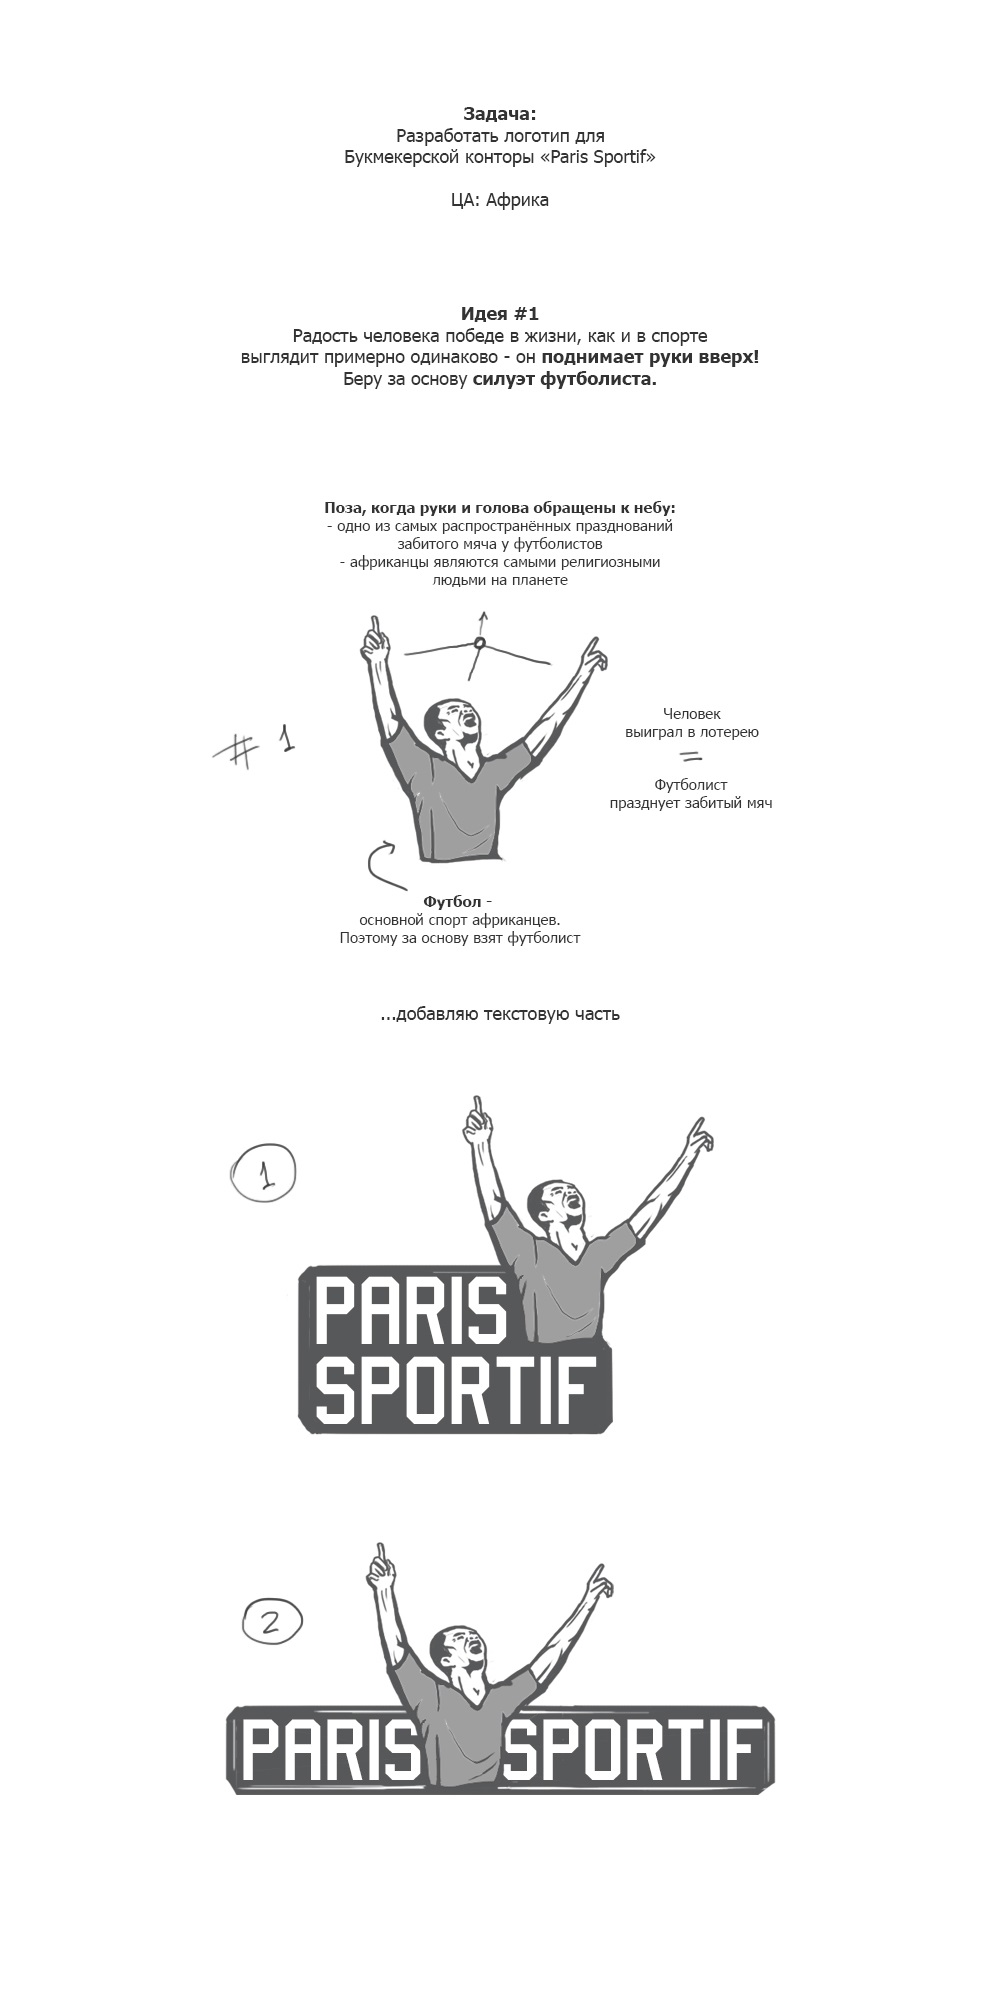 Paris Sportif logo 1